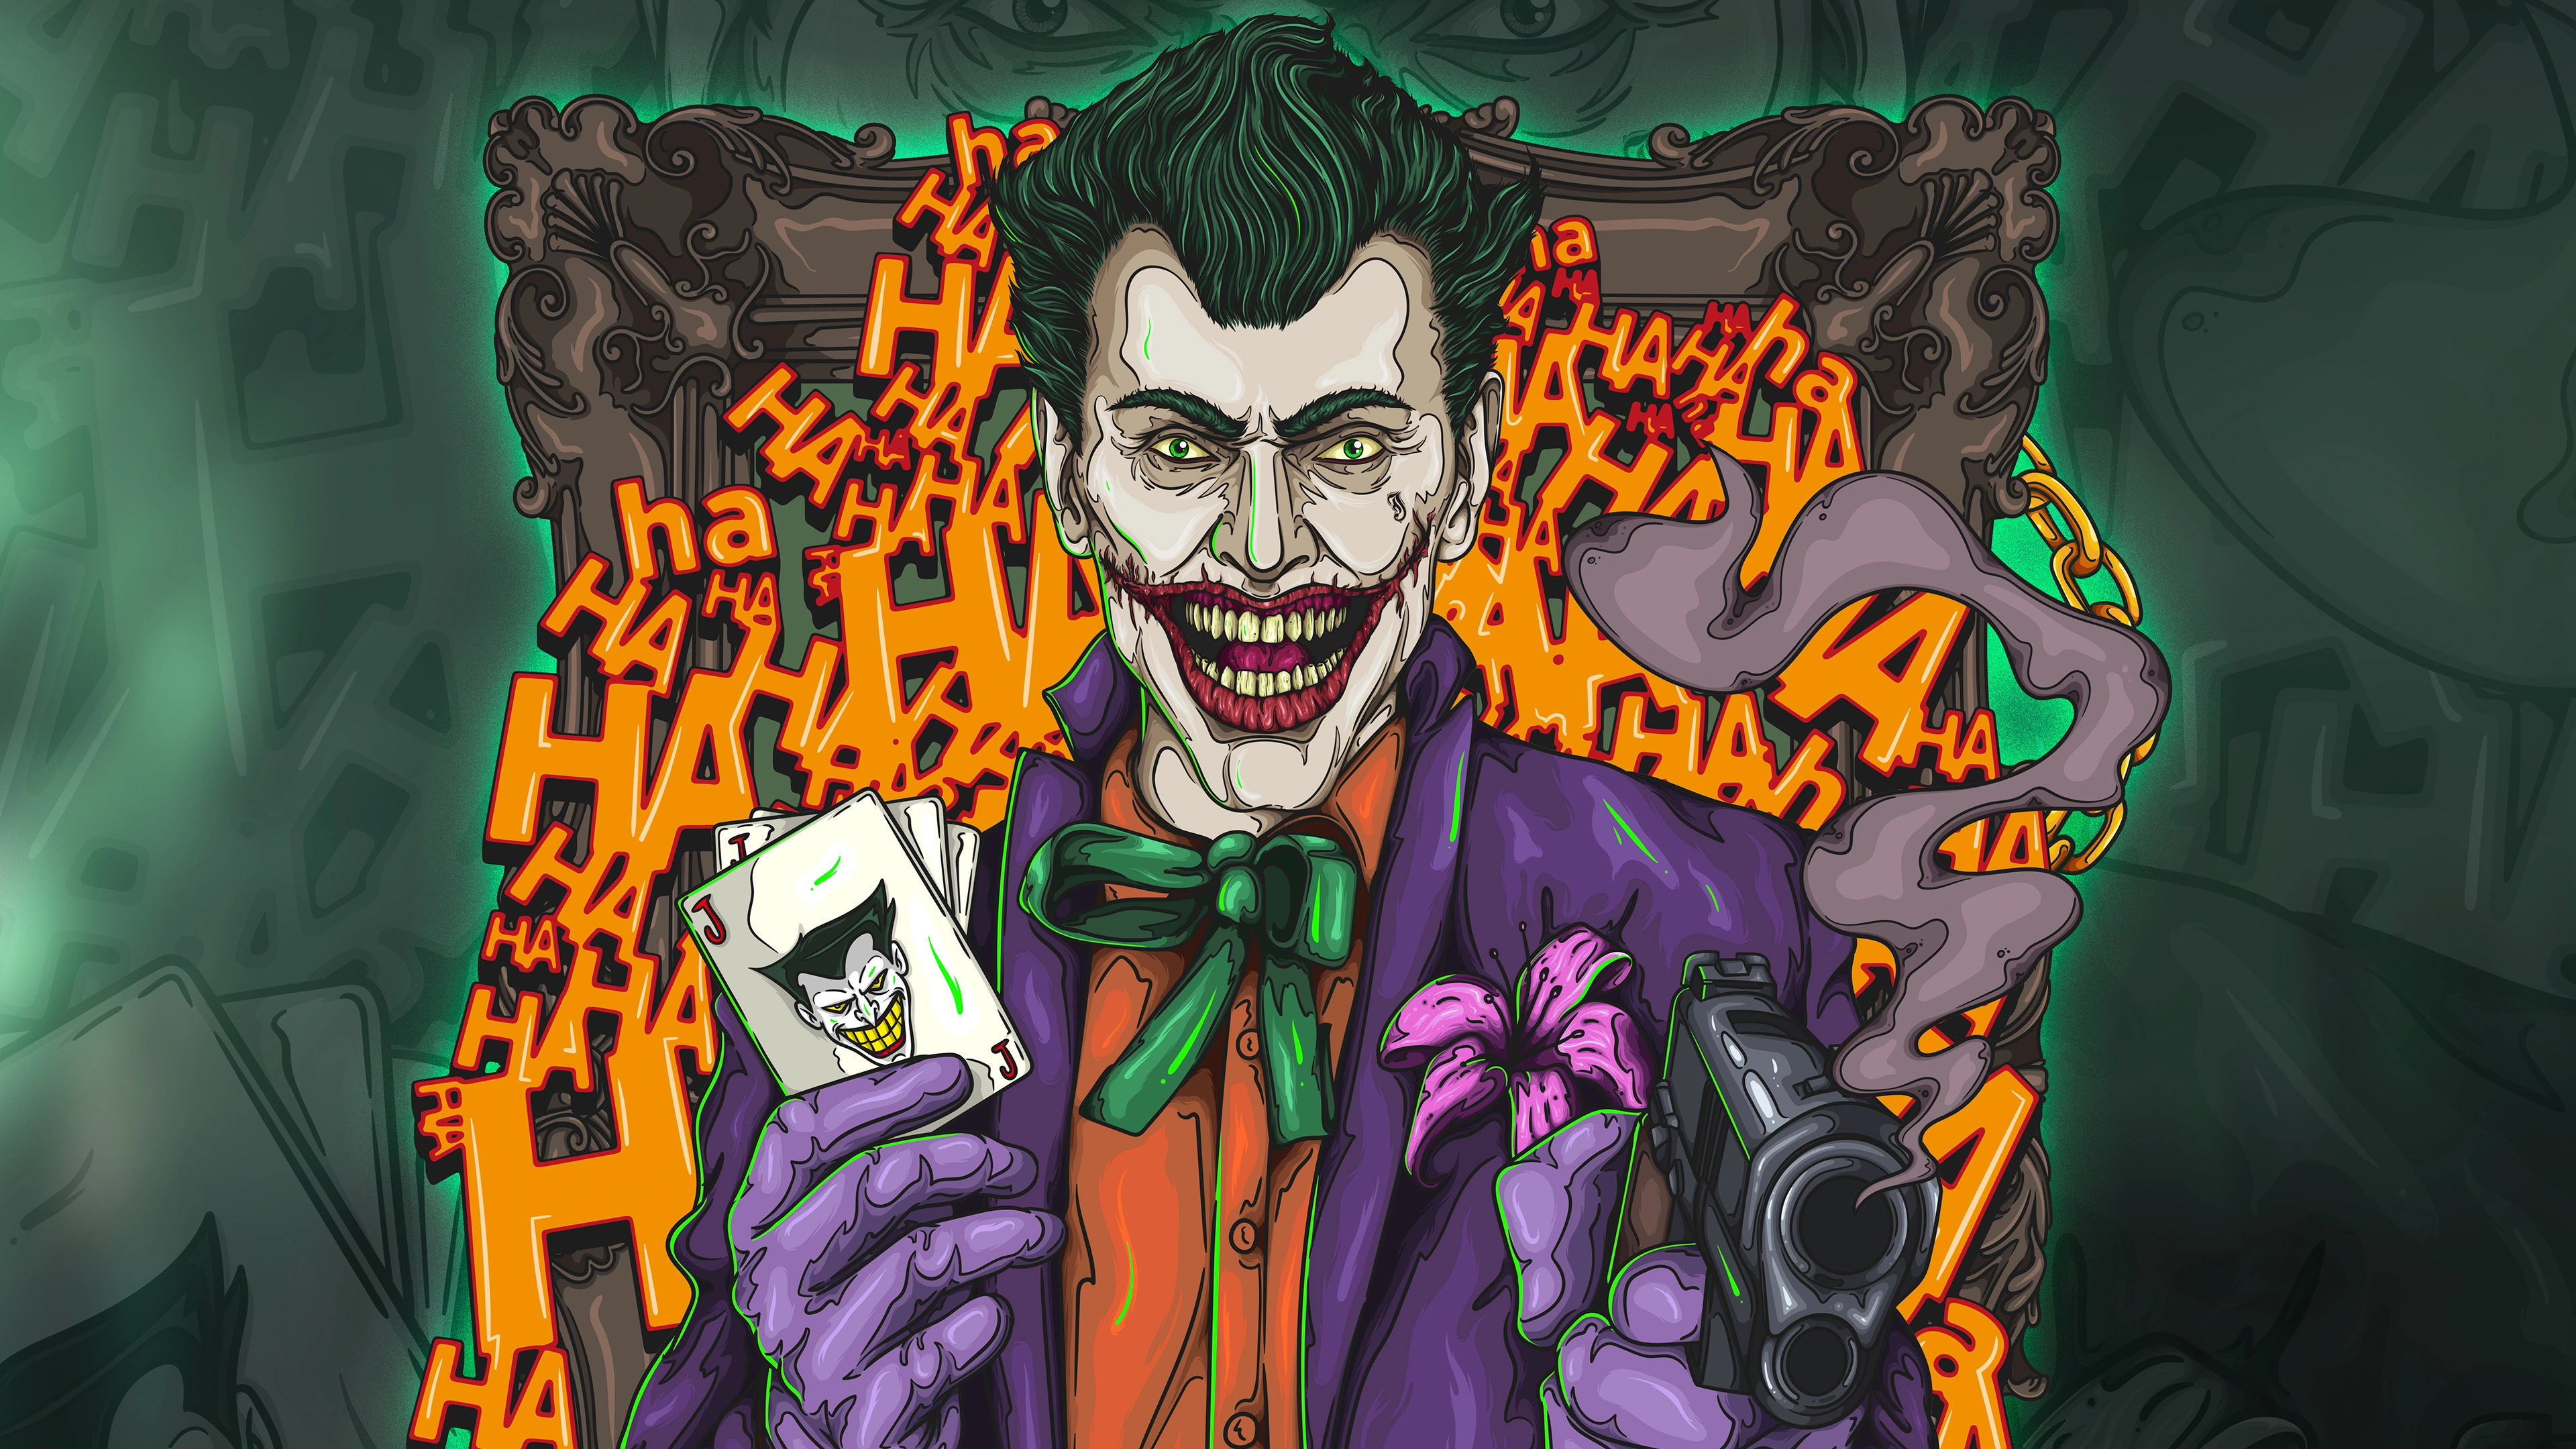 the joker 4k artwork 1537645958 - The Joker 4k Artwork - supervillain wallpapers, superheroes wallpapers, joker wallpapers, hd-wallpapers, digital art wallpapers, behance wallpapers, artwork wallpapers, 4k-wallpapers